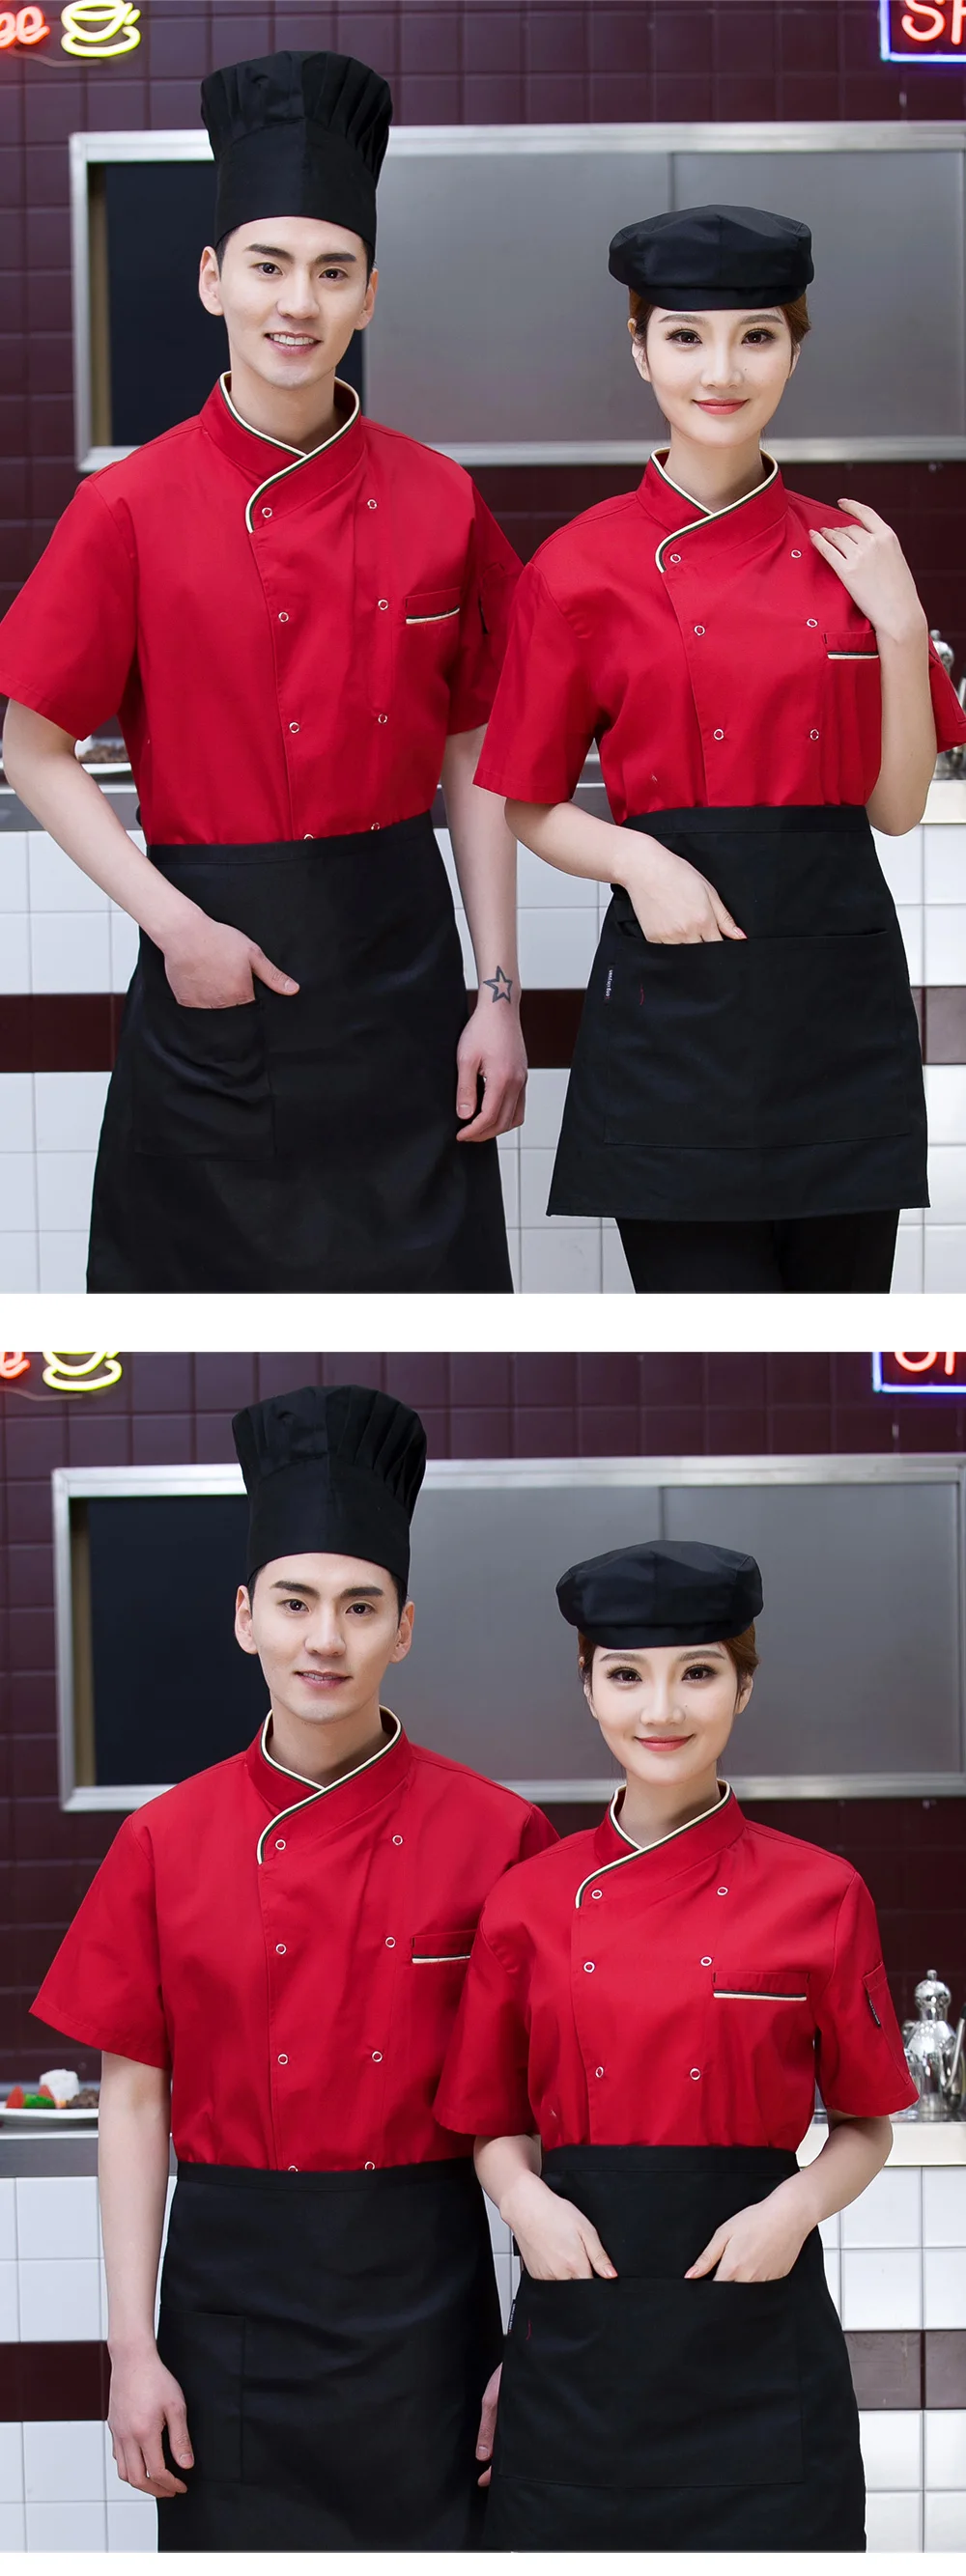 Дышащая форма для работников отеля еда обслуживание ресторанное питание шеф-повара Униформа хлопок плита куртки пекарня официантка